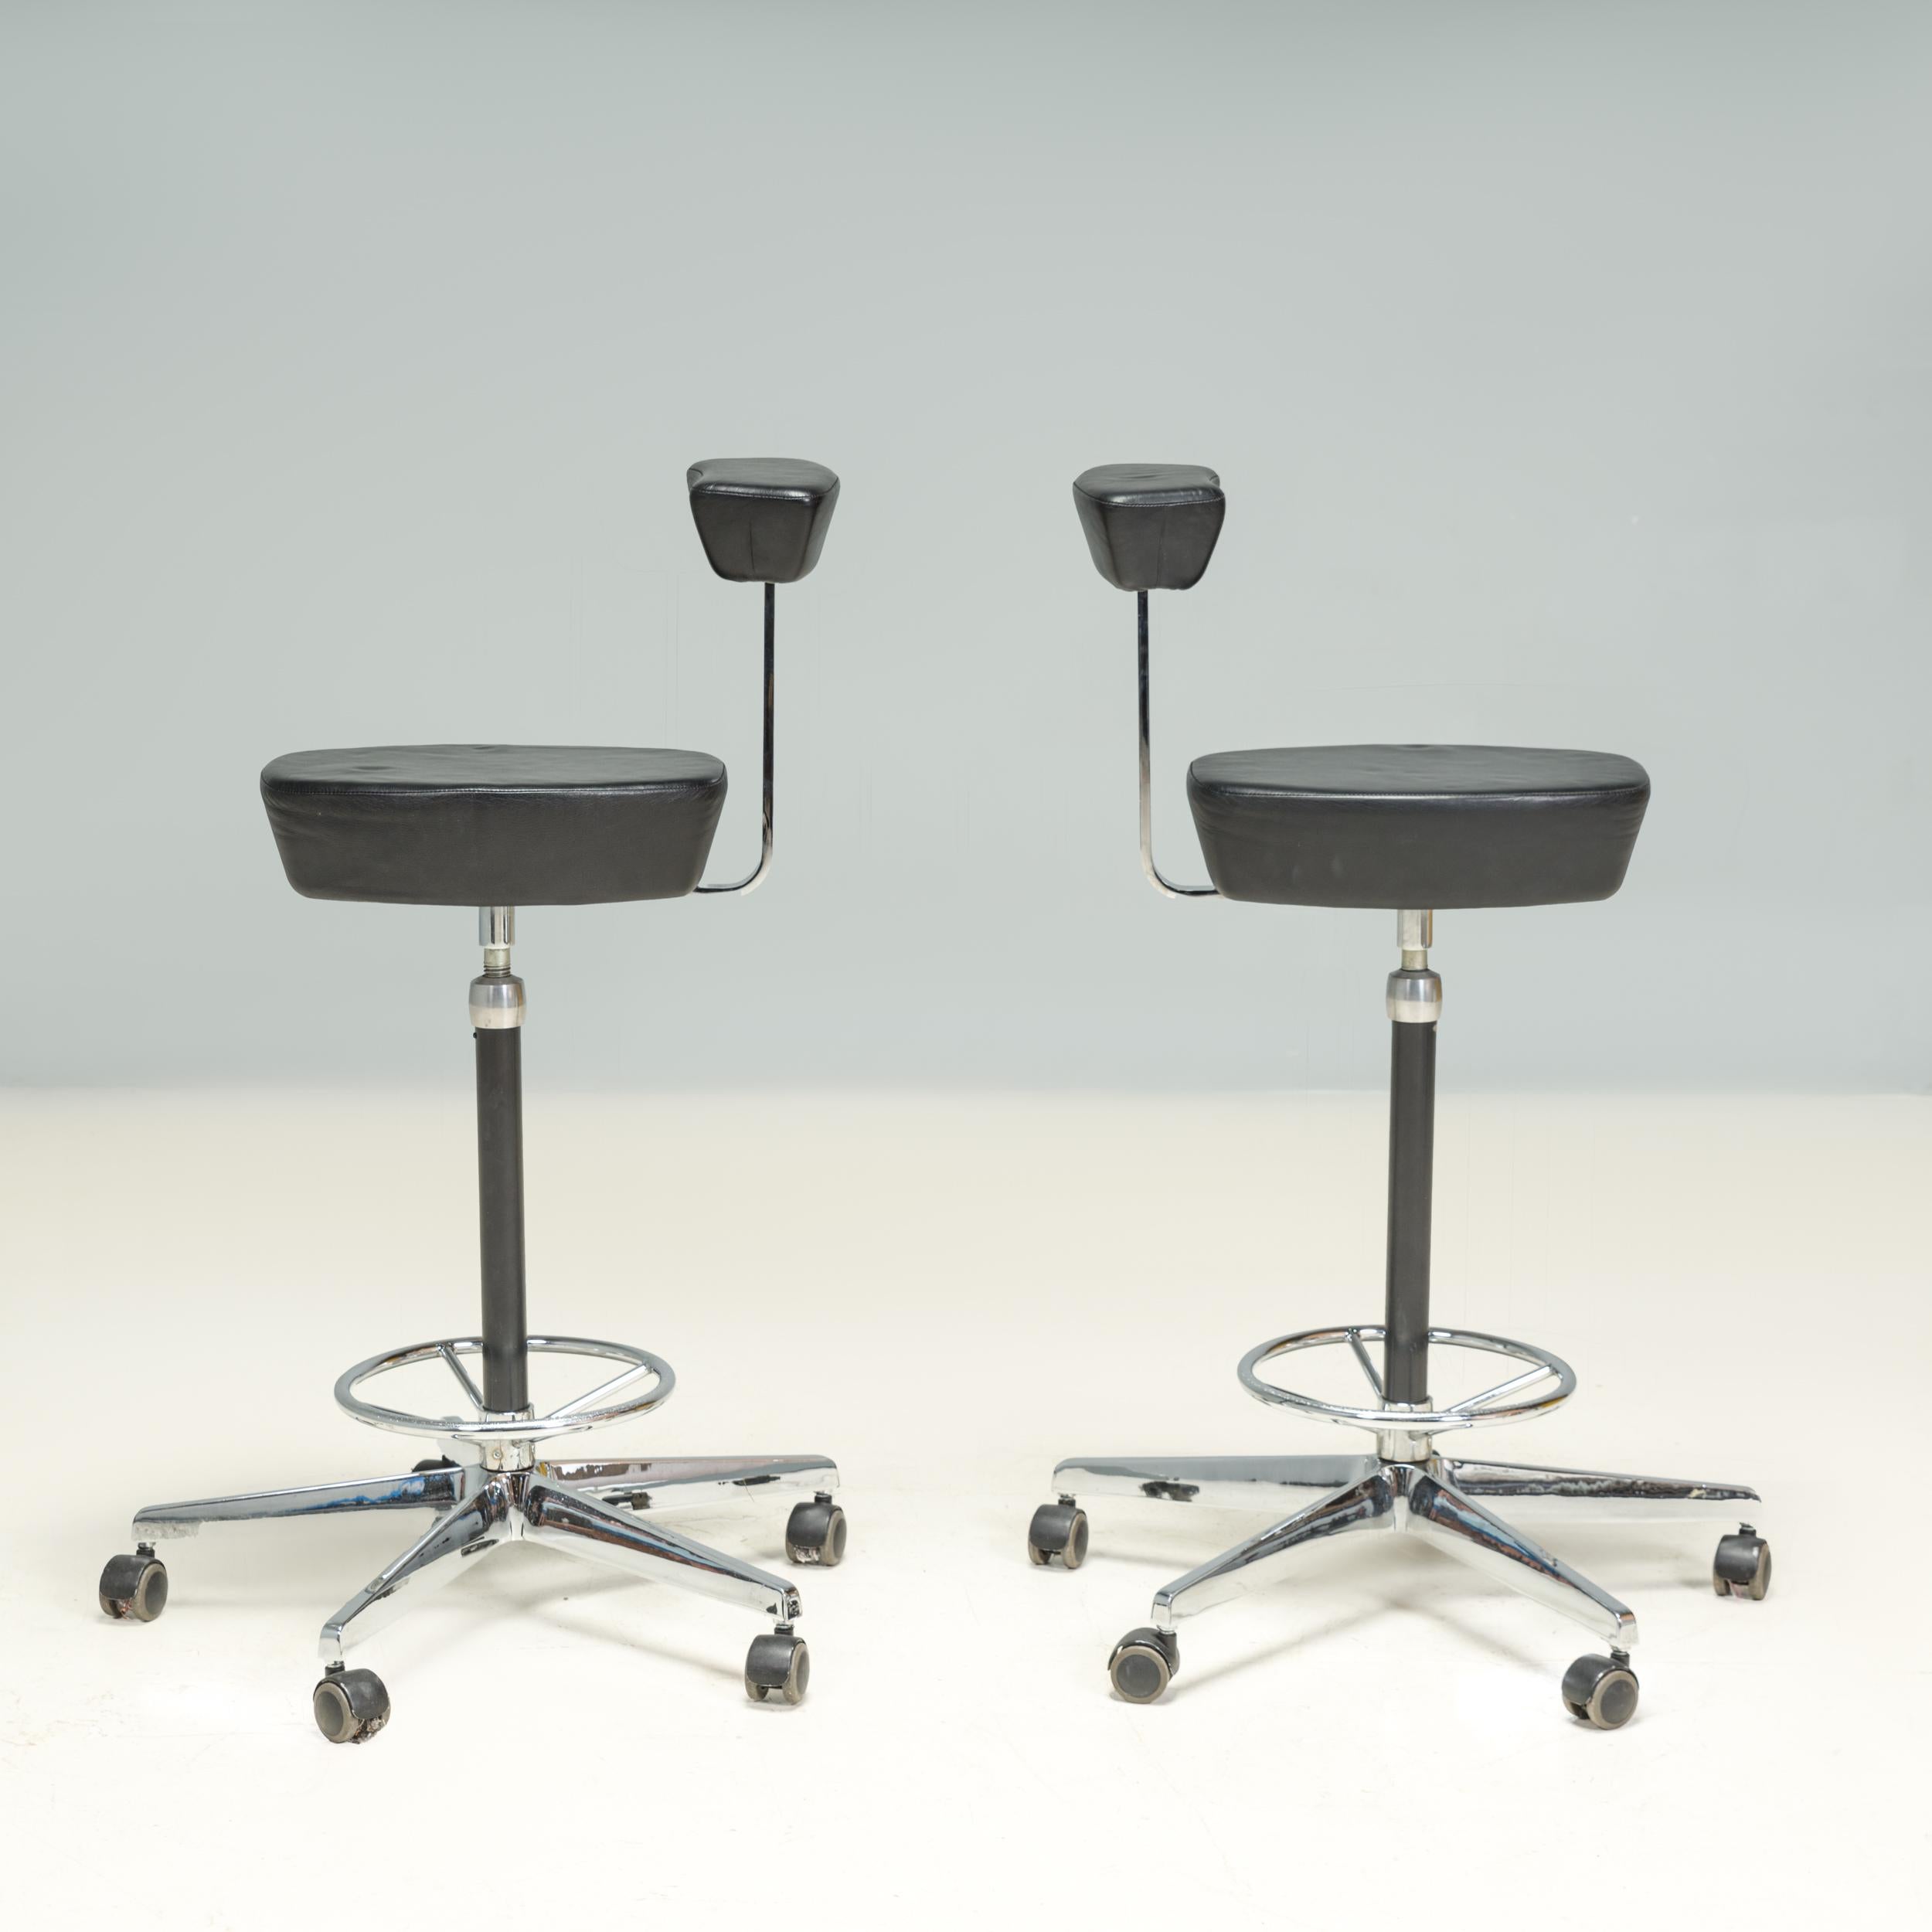 Conçue à l'origine par George Nelson en 1964, la chaise de bureau Perch faisait partie du système de bureau révolutionnaire Herman Miller Action 1, qui était la première conception de bureau à aire ouverte.

Cette paire de chaises de bureau Perch a